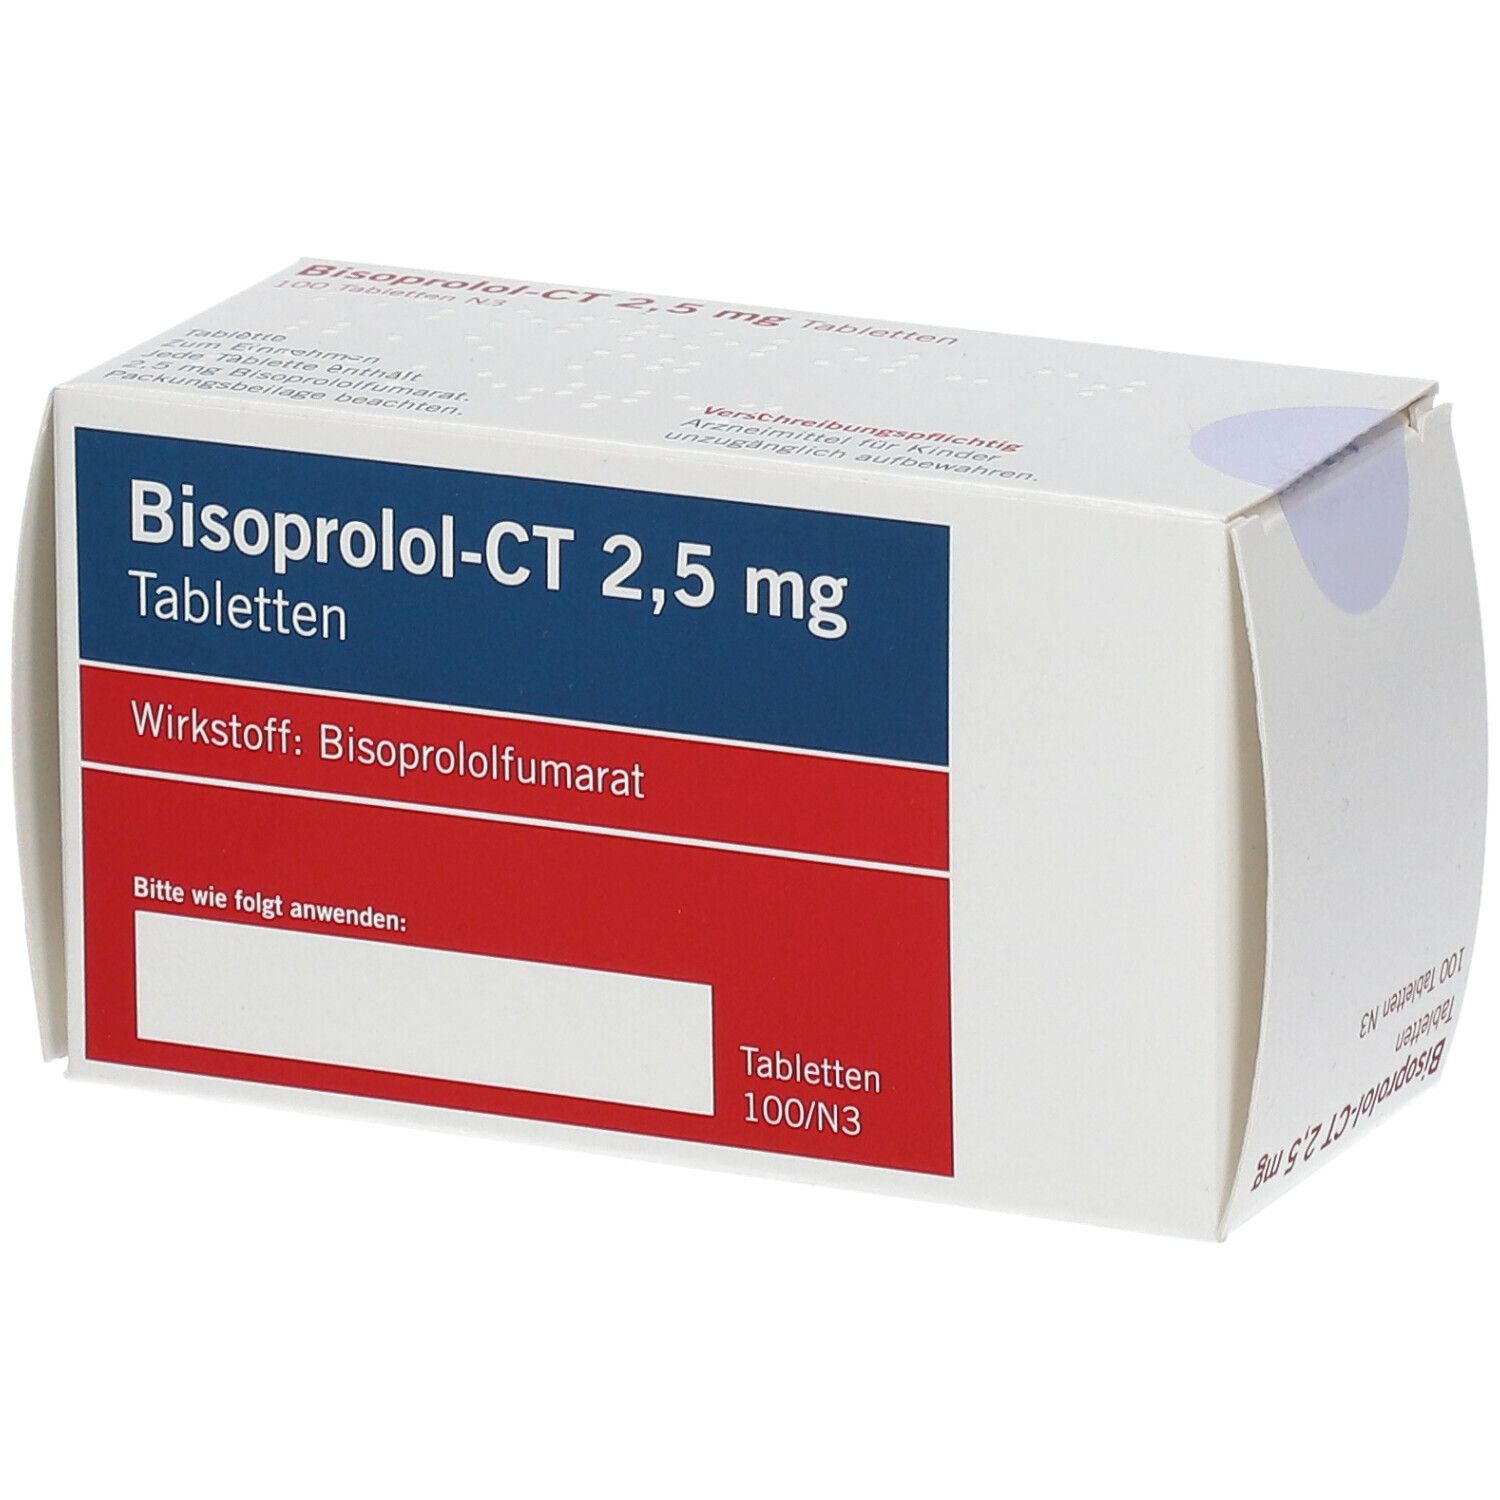 Bisoprolol - Ct 2.5Mg